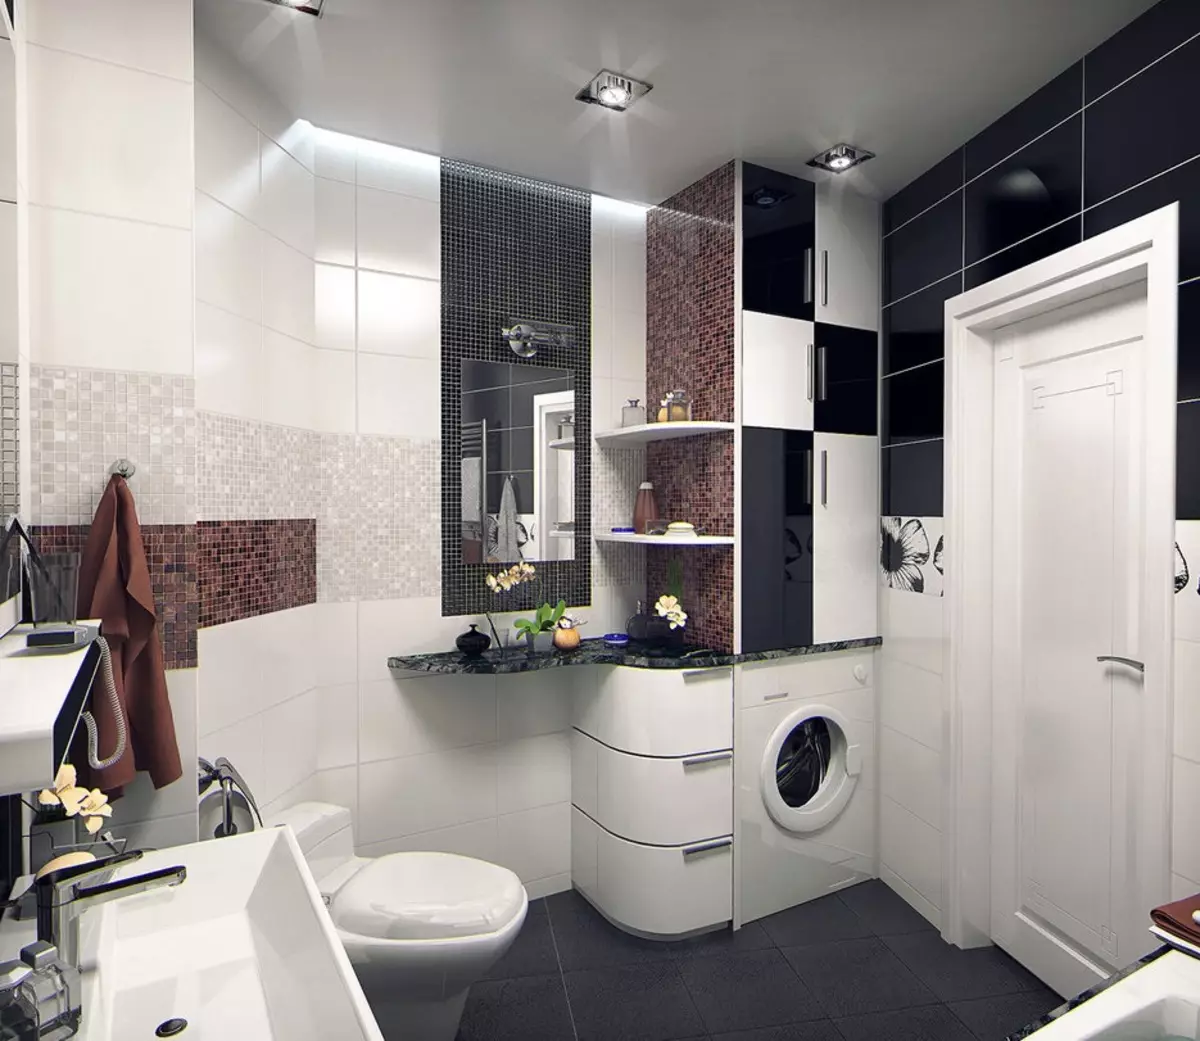 Yhdistetyn kylpyhuoneen suunnittelu 6 neliömetriä. M (77 Valokuvat): Sisustussuunnittelu WC: llä, kylpyasmulla 2 3 metriä 10454_57